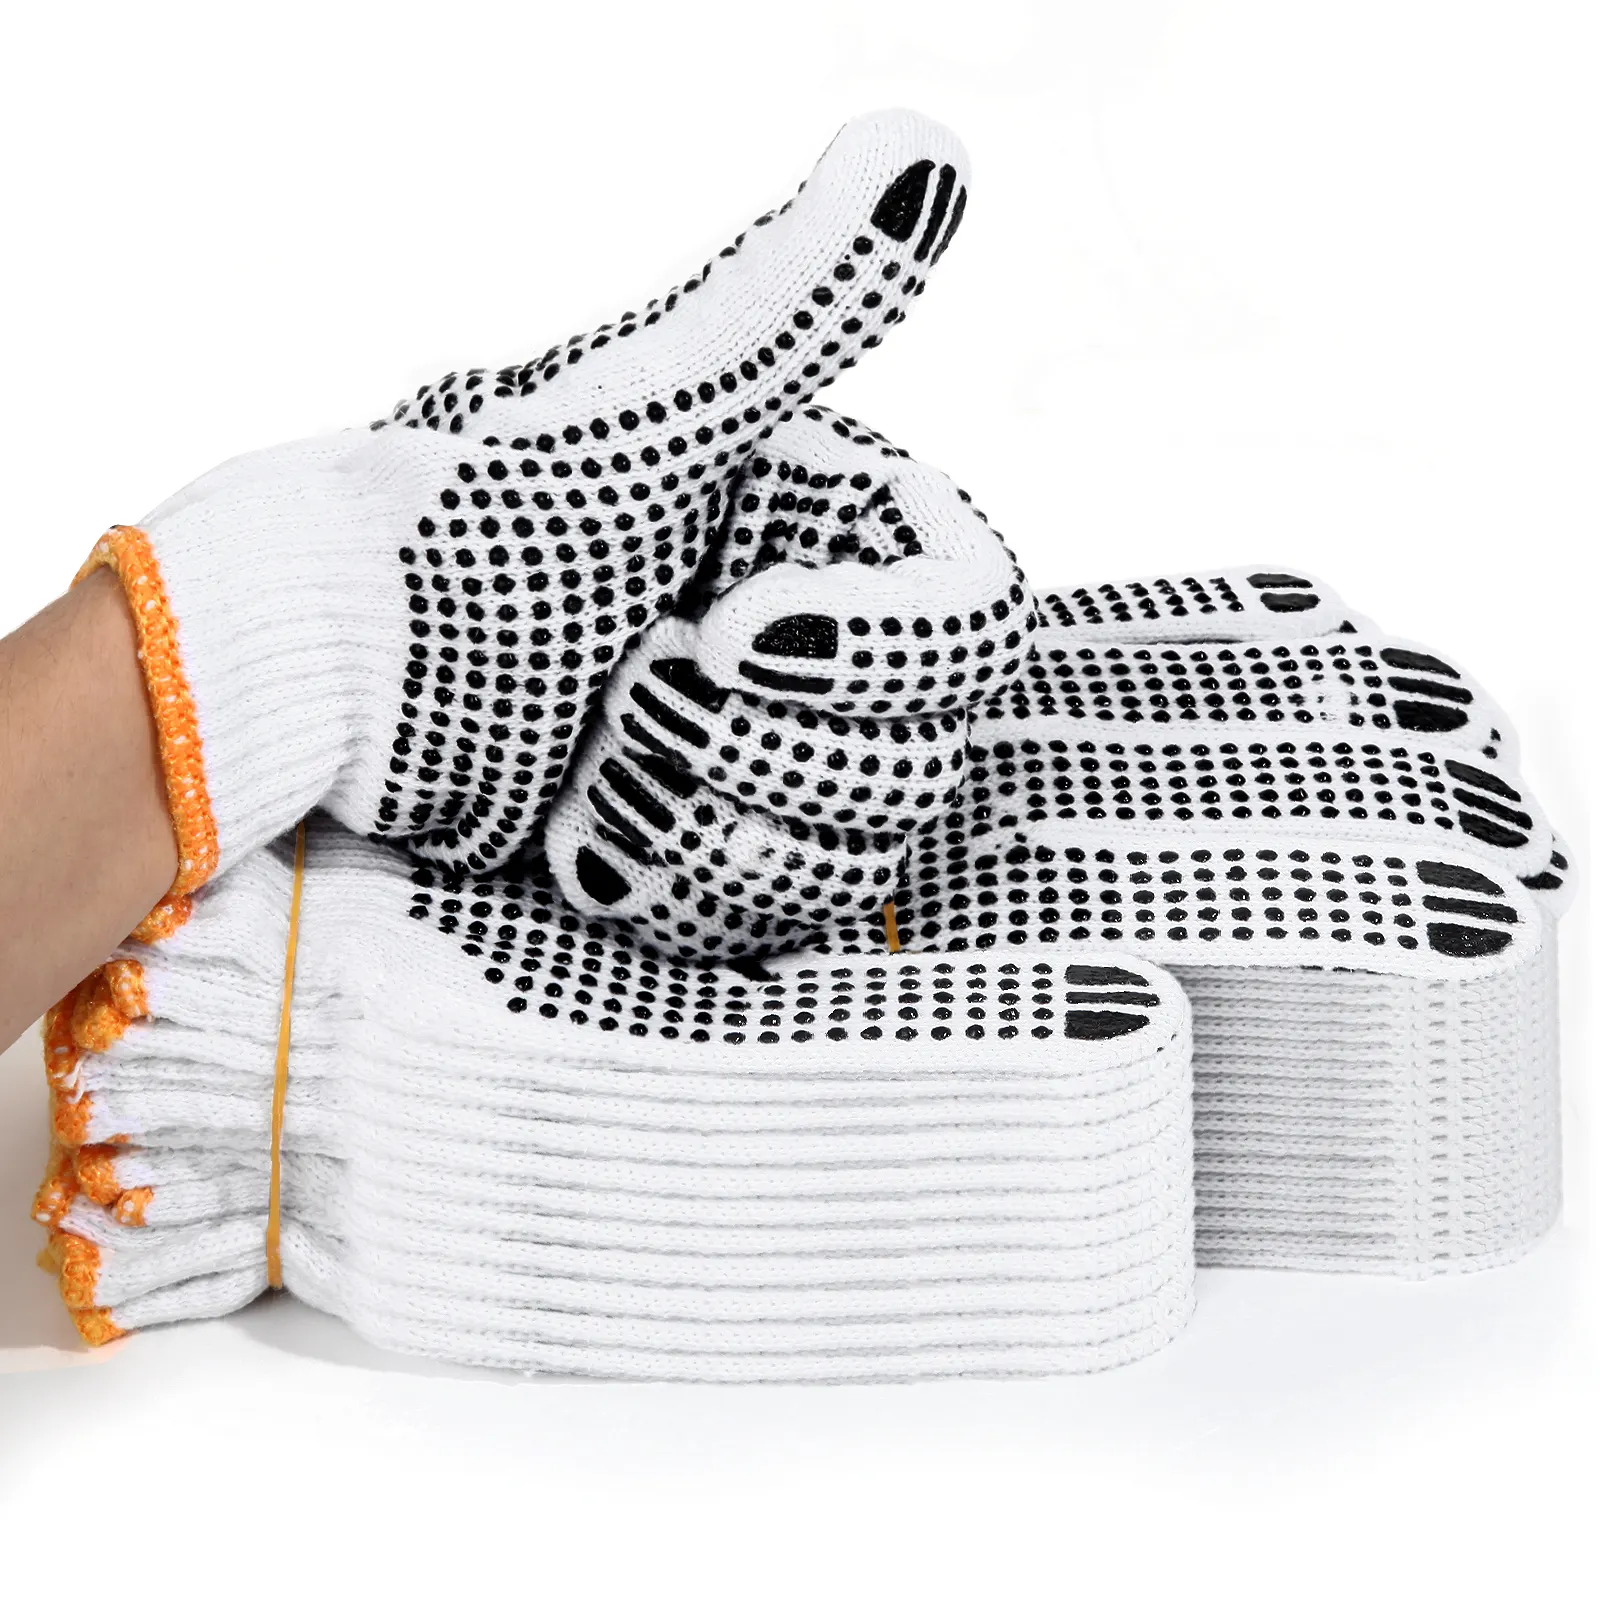 Günstige schwarze gepunktete Handschuhe Konstruktion Handschutz Sicherheit PVC gepunktete Baumwolle gestrickte Arbeits handschuhe